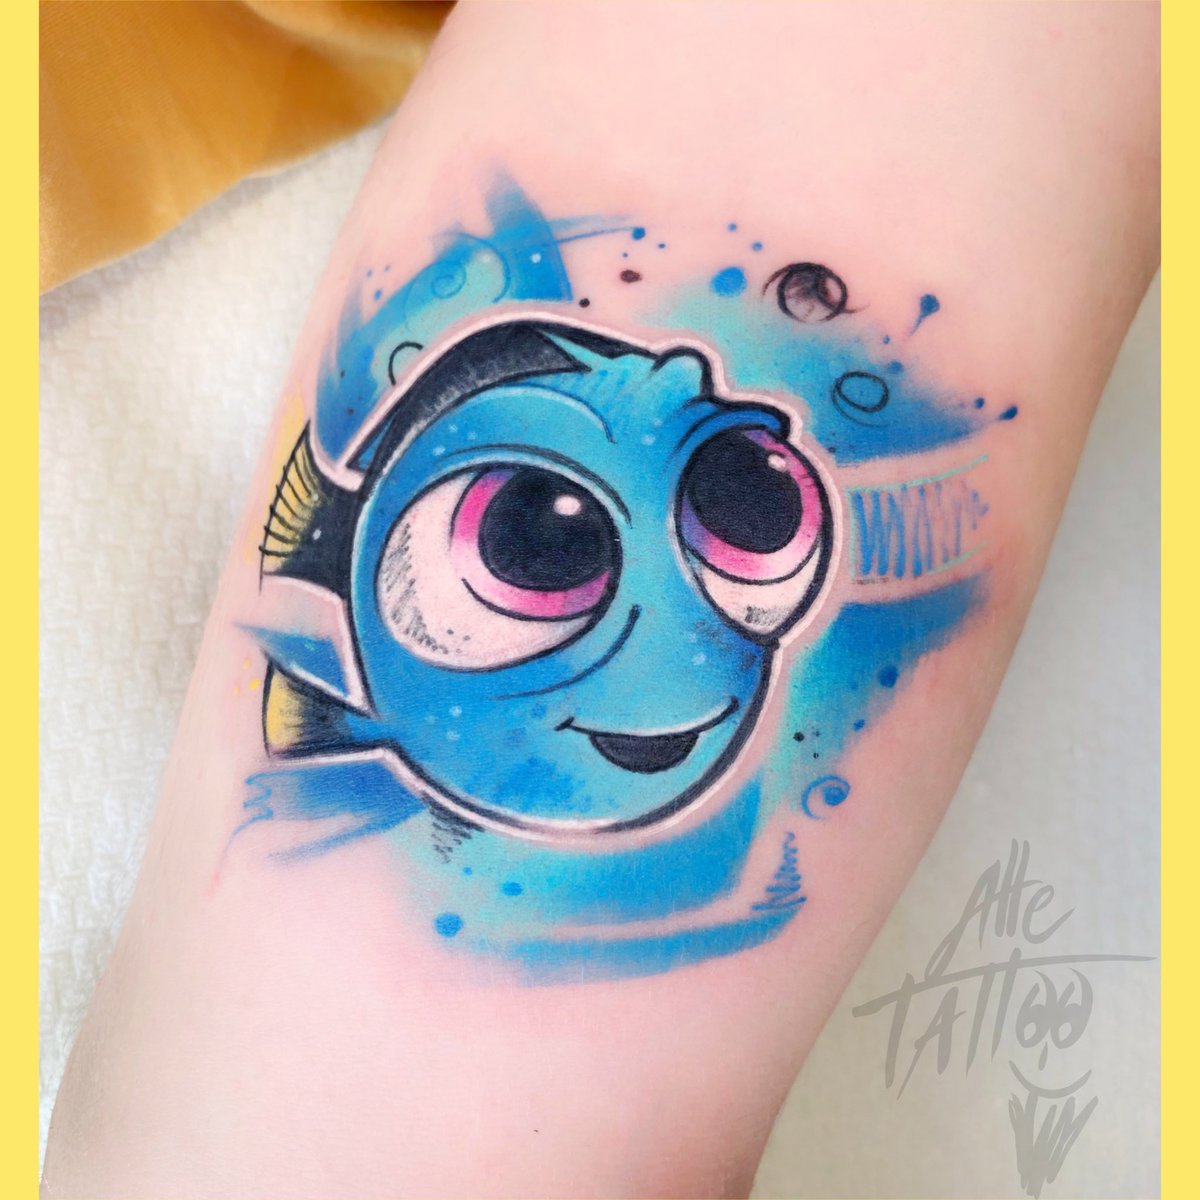 Qual è il vostro personaggio preferito del cartone animato Nemo? 🐠 
Which Nemo character is your favorite? 🐠 

#alletattoo #tattoo #tatuaggio #modena #nemo #reef #reeftank #reefs #fish #love #reefporn #saltwateraquarium #aquarium #clownfish #coralreef